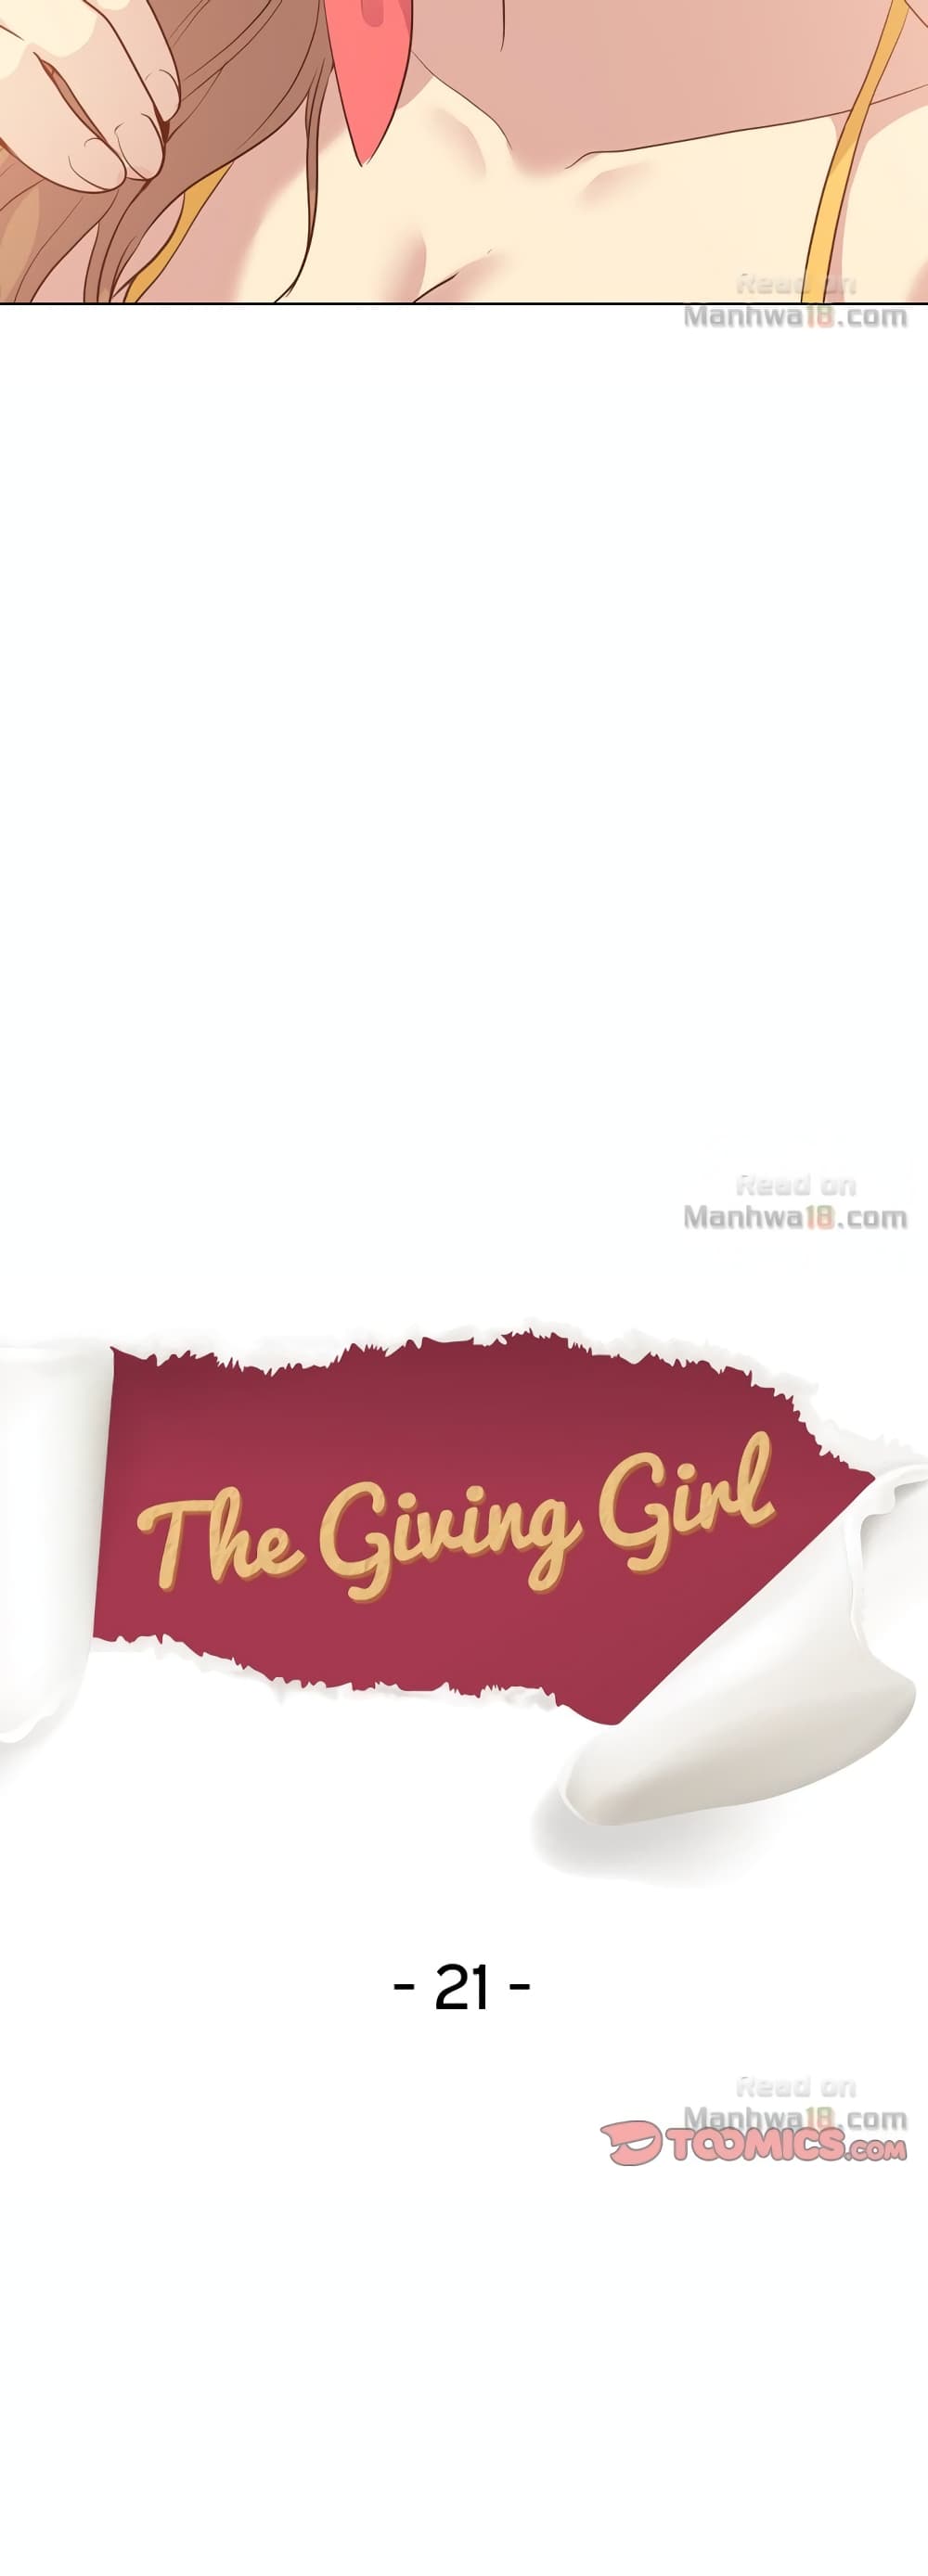 Giving Girl 21 05